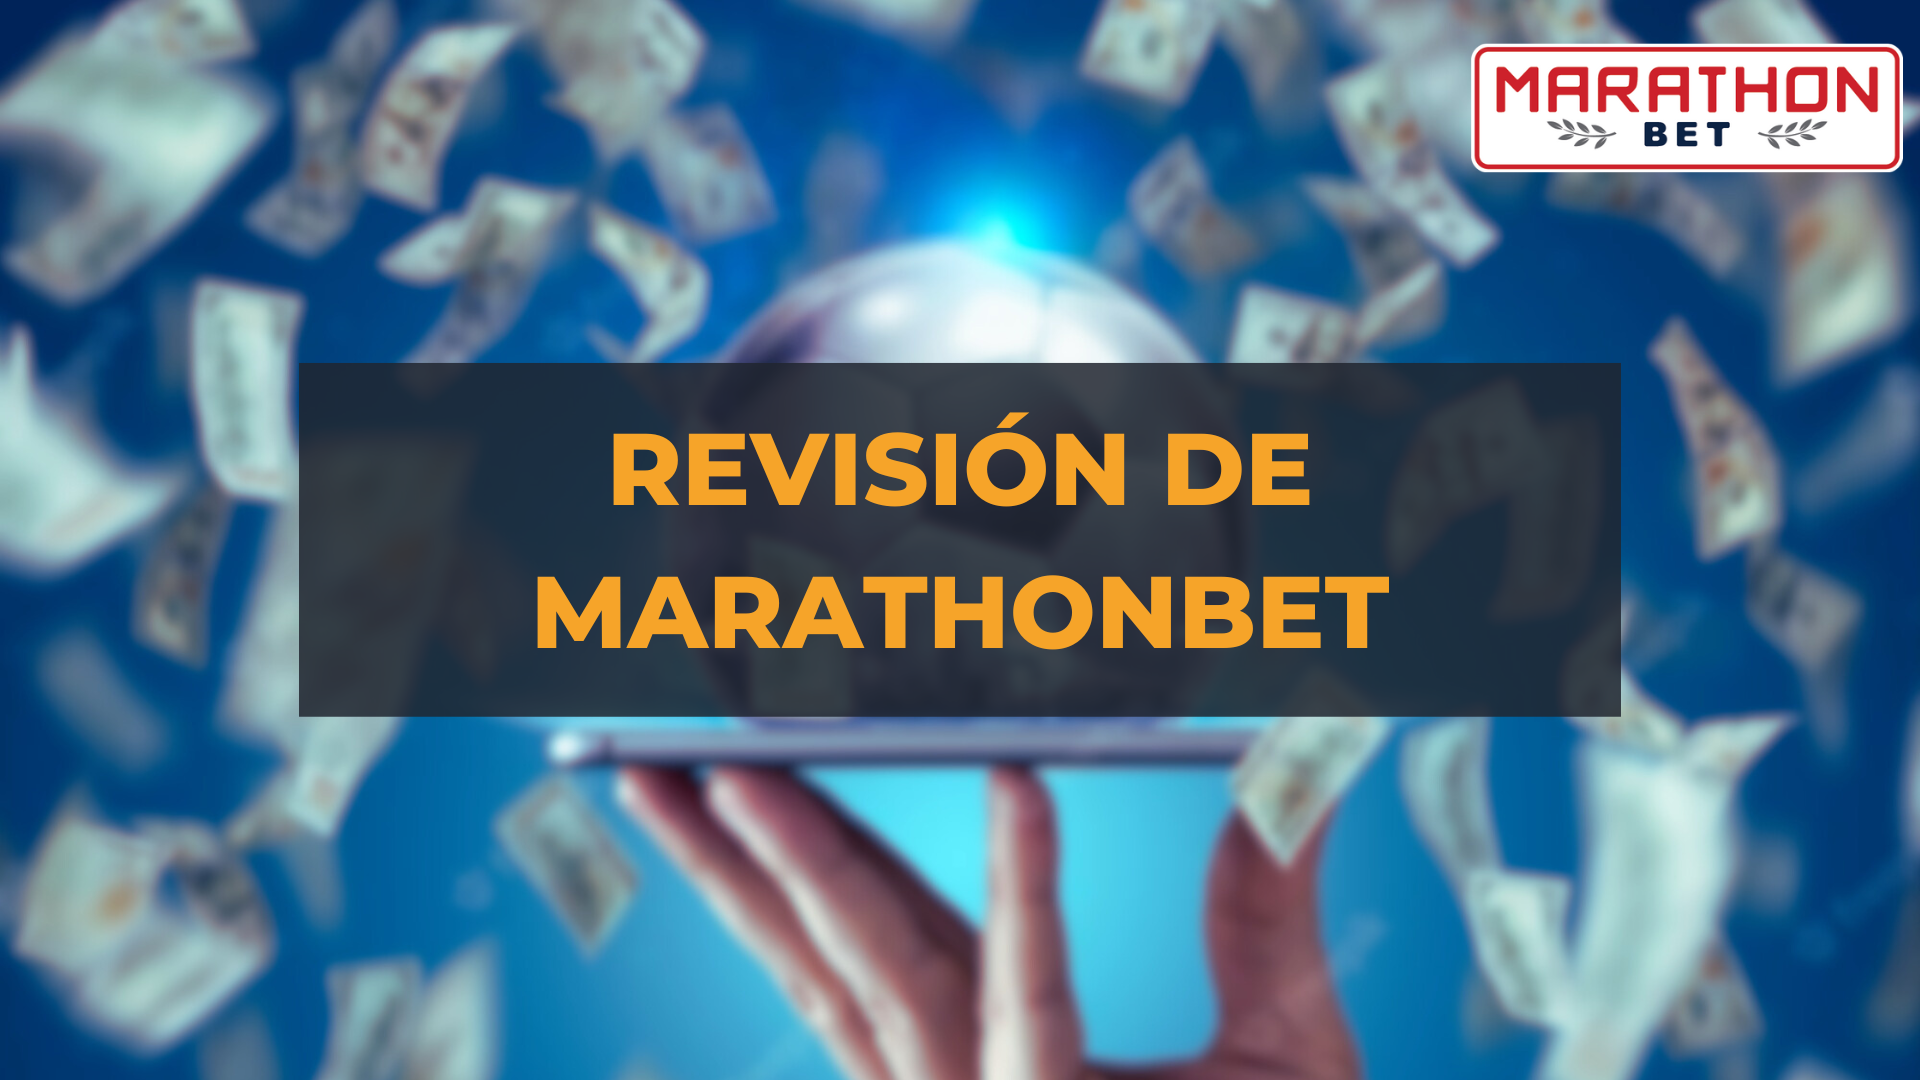 Revisión de Marathonbet